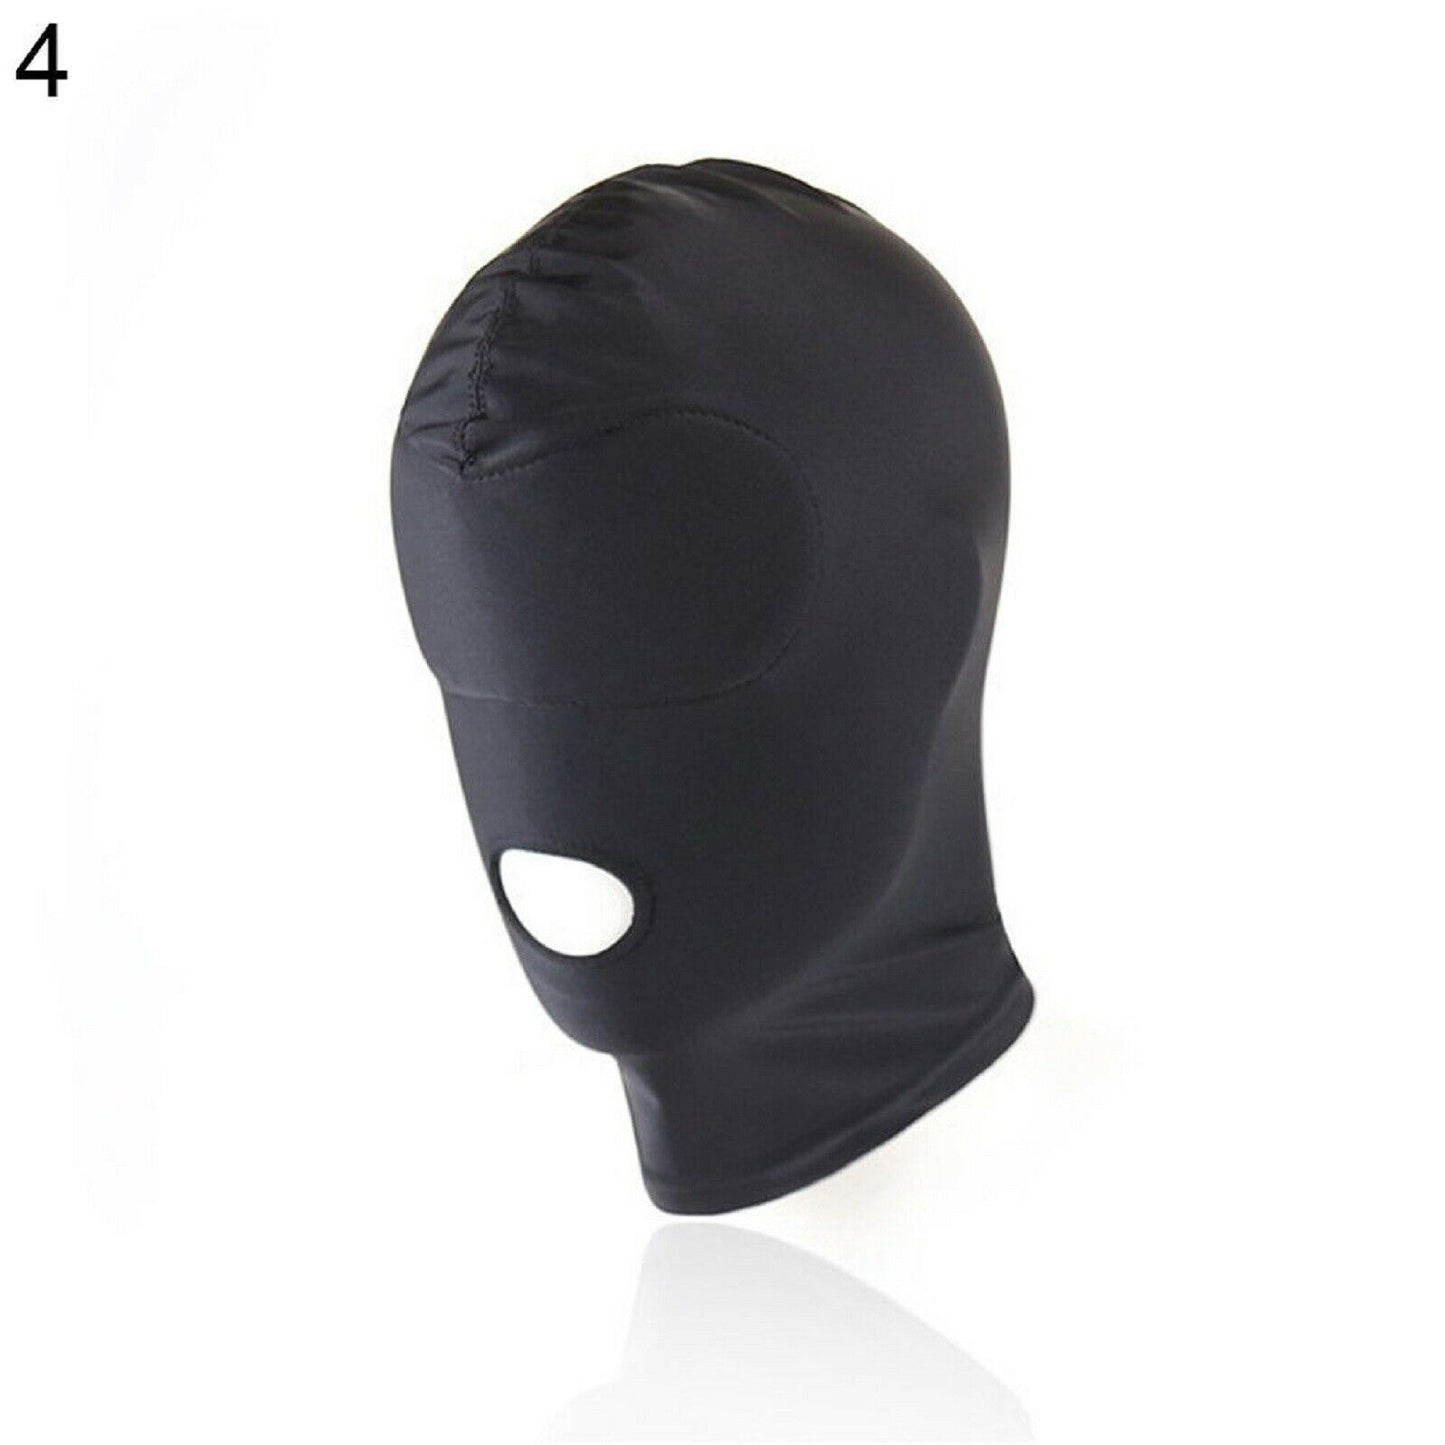 Bondage Hood Head Mask BDSM Conceal Identity Fetish Gay Sub Stretchy Sex Toy